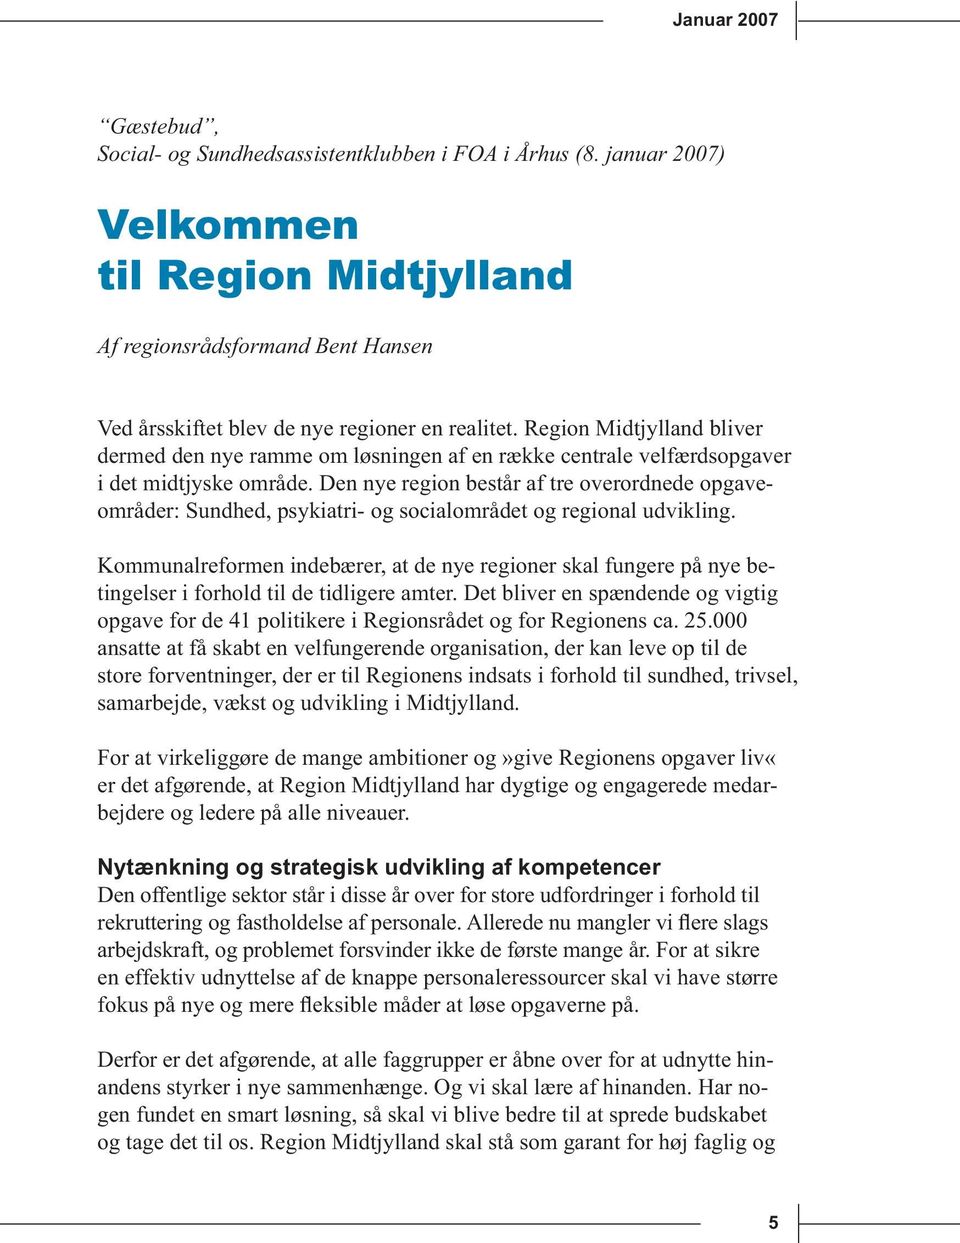 Region Midtjylland bliver dermed den nye ramme om løsningen af en række centrale velfærdsopgaver i det midtjyske område.